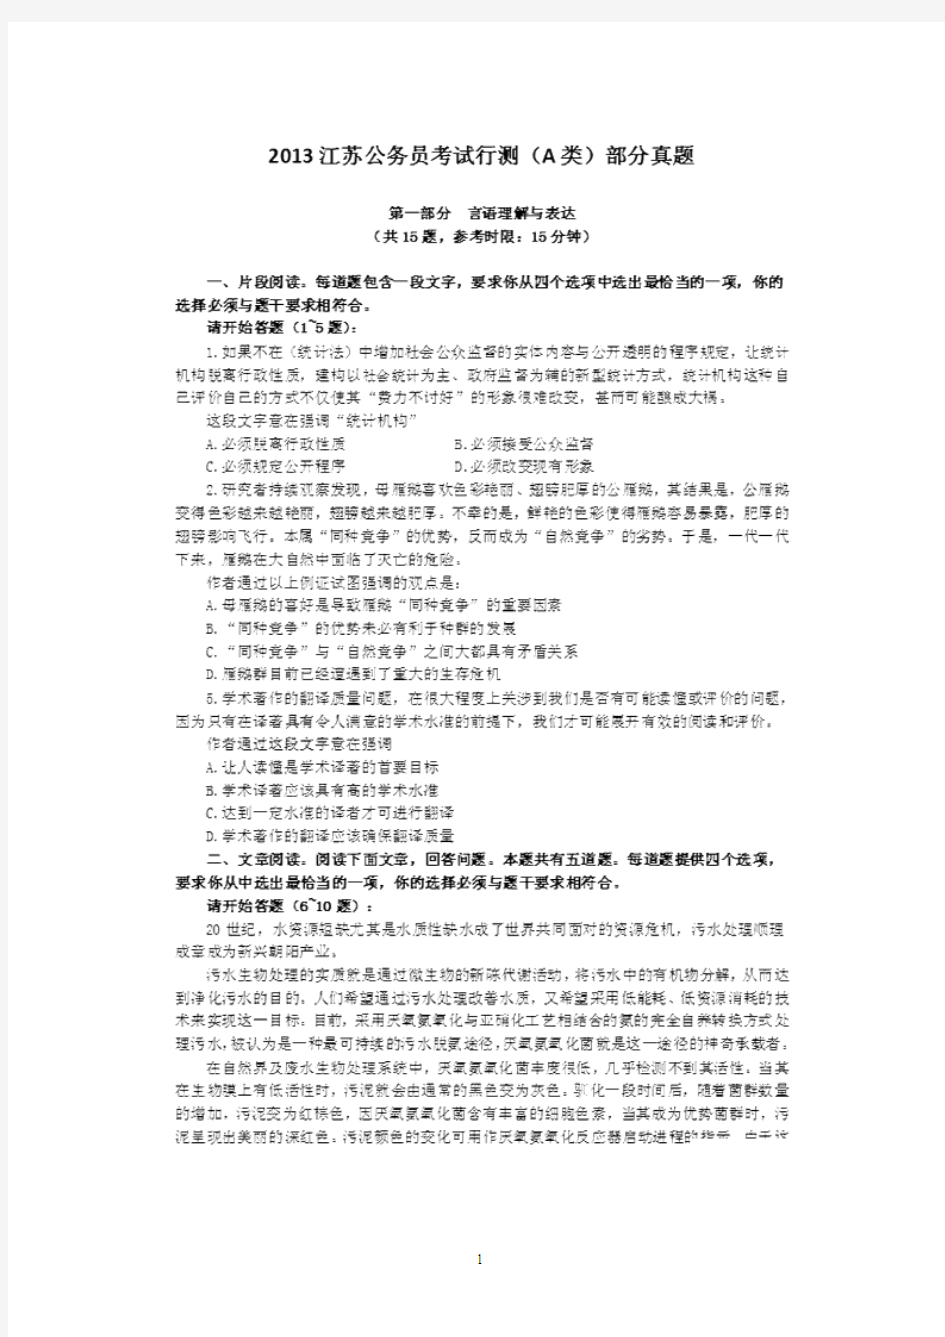 2013江苏省公务员考试行测A类真题答案及解析(部分)